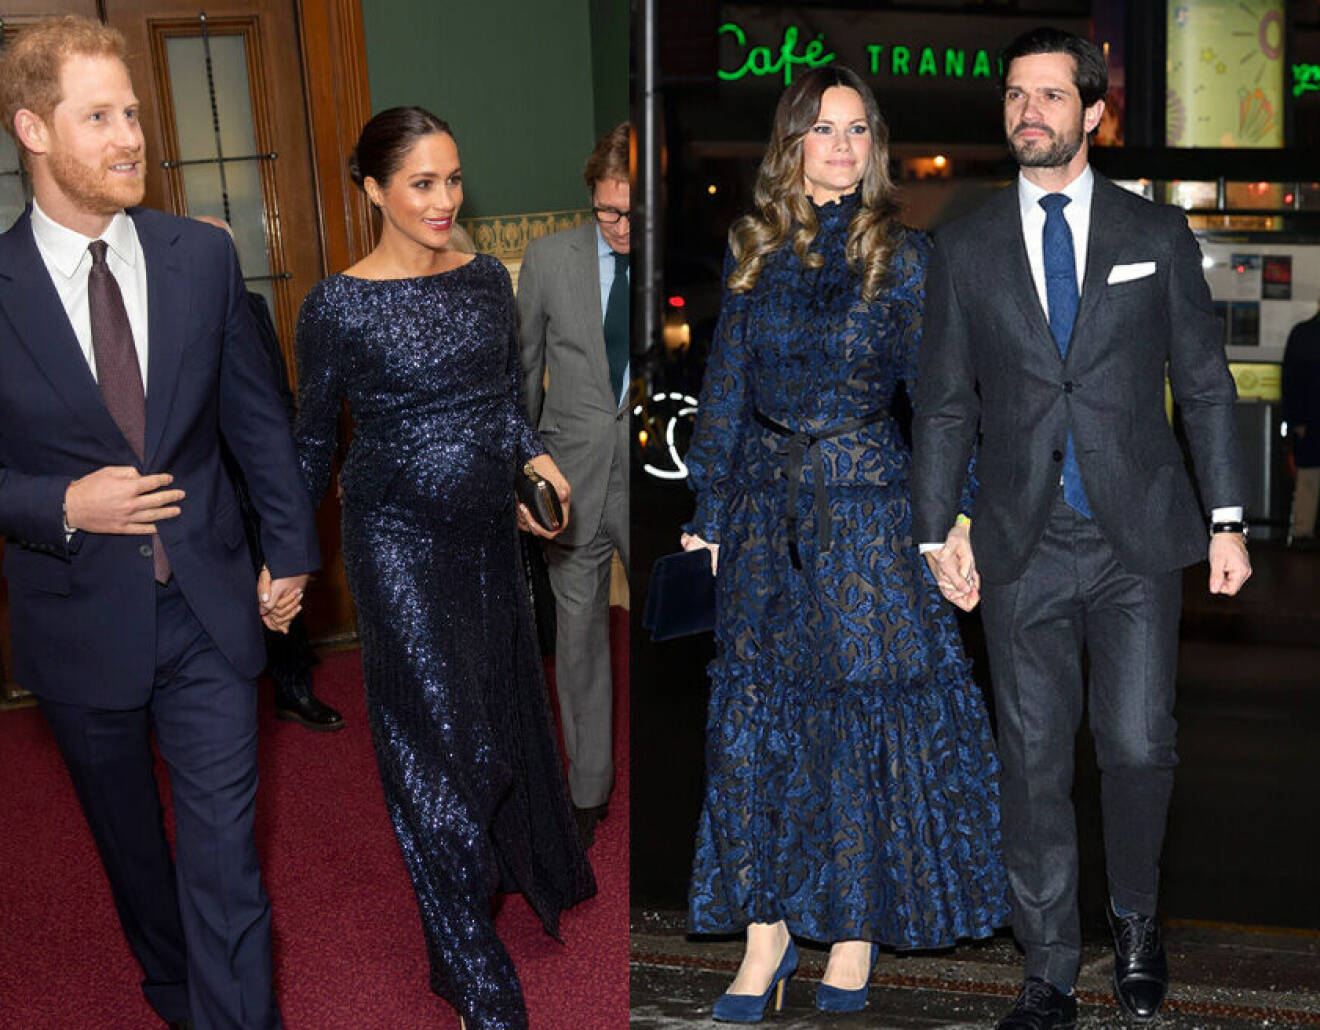 Prins Harry och Meghan Markle i blå klädsel, och prinsessan Sofia i en liknande klänning och prins Carl Philip